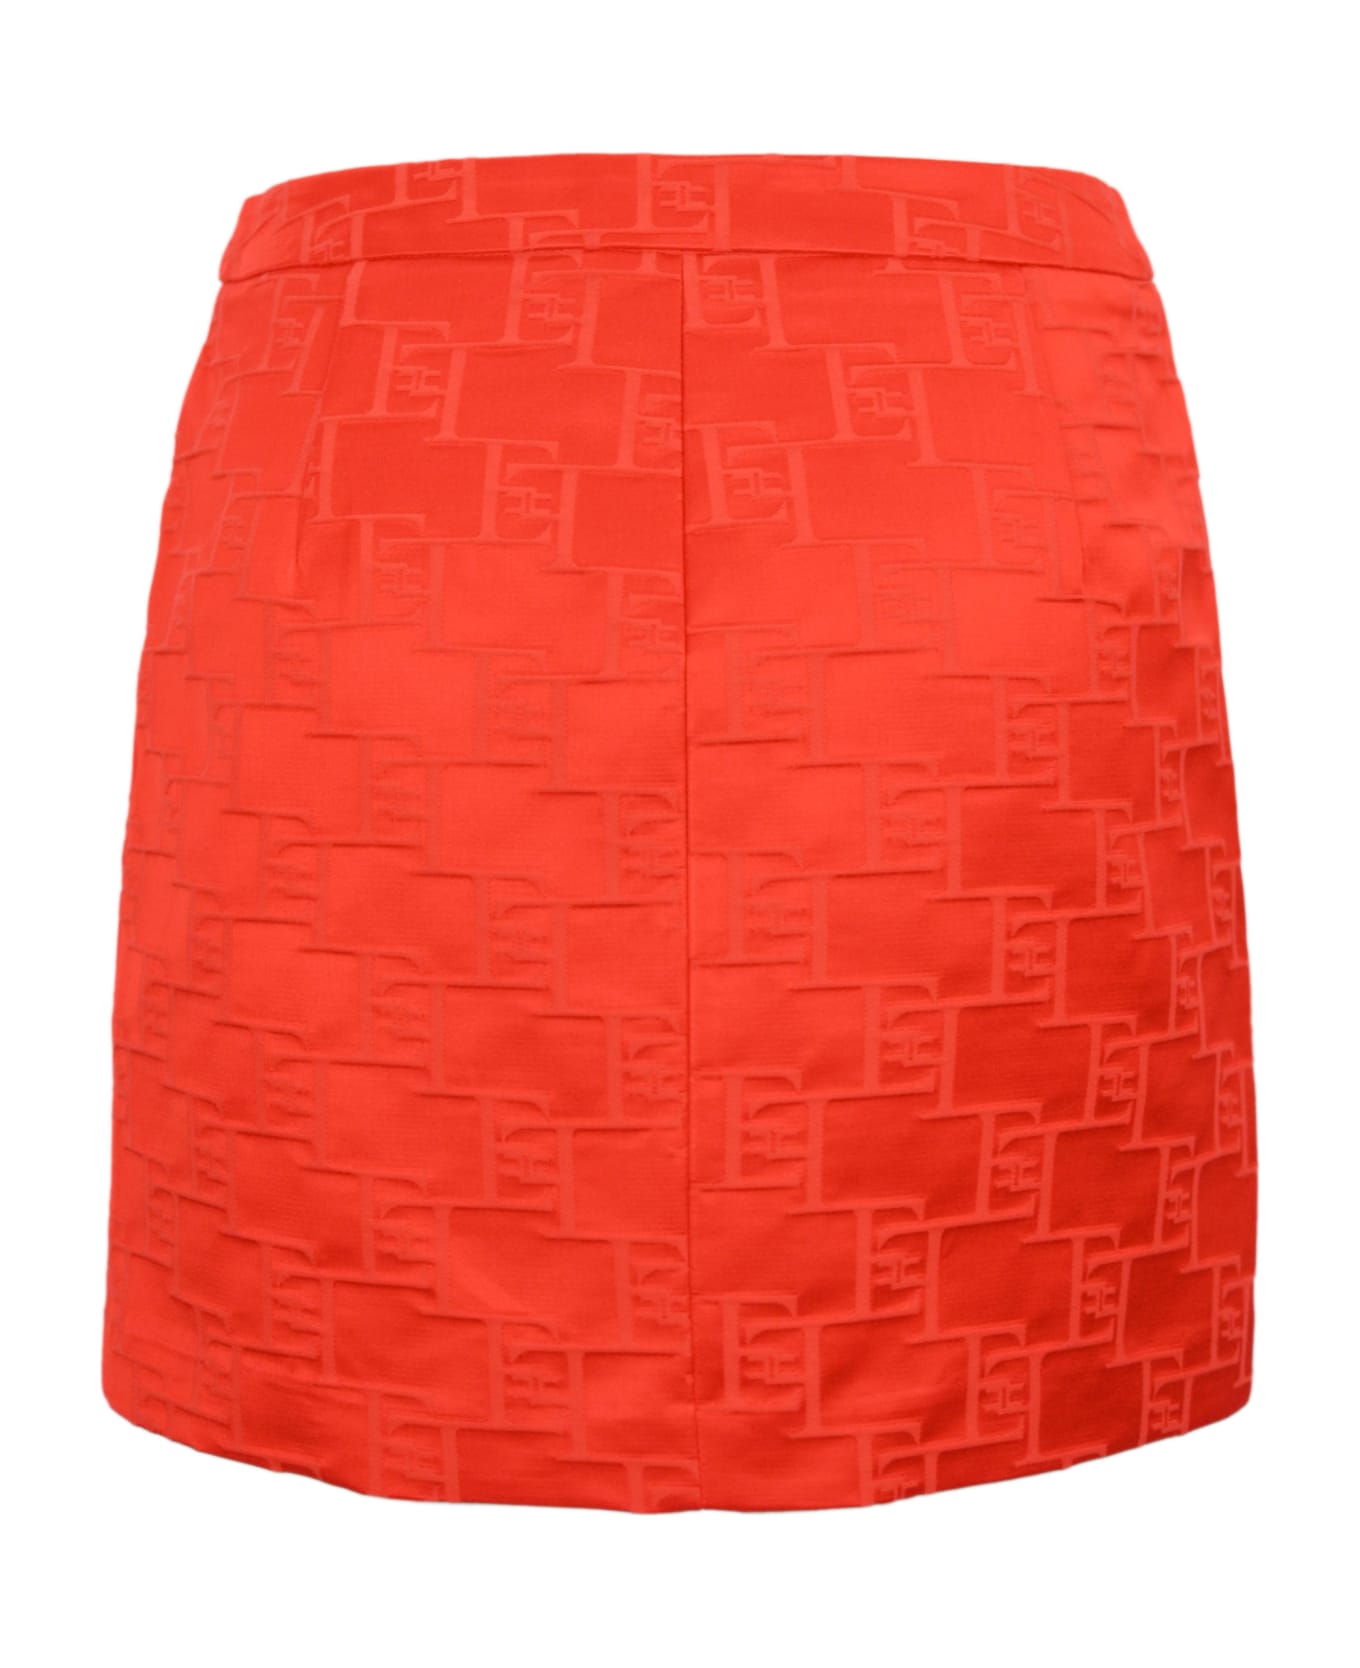 Elisabetta Franchi Satin Skirt With Logo - Corallo